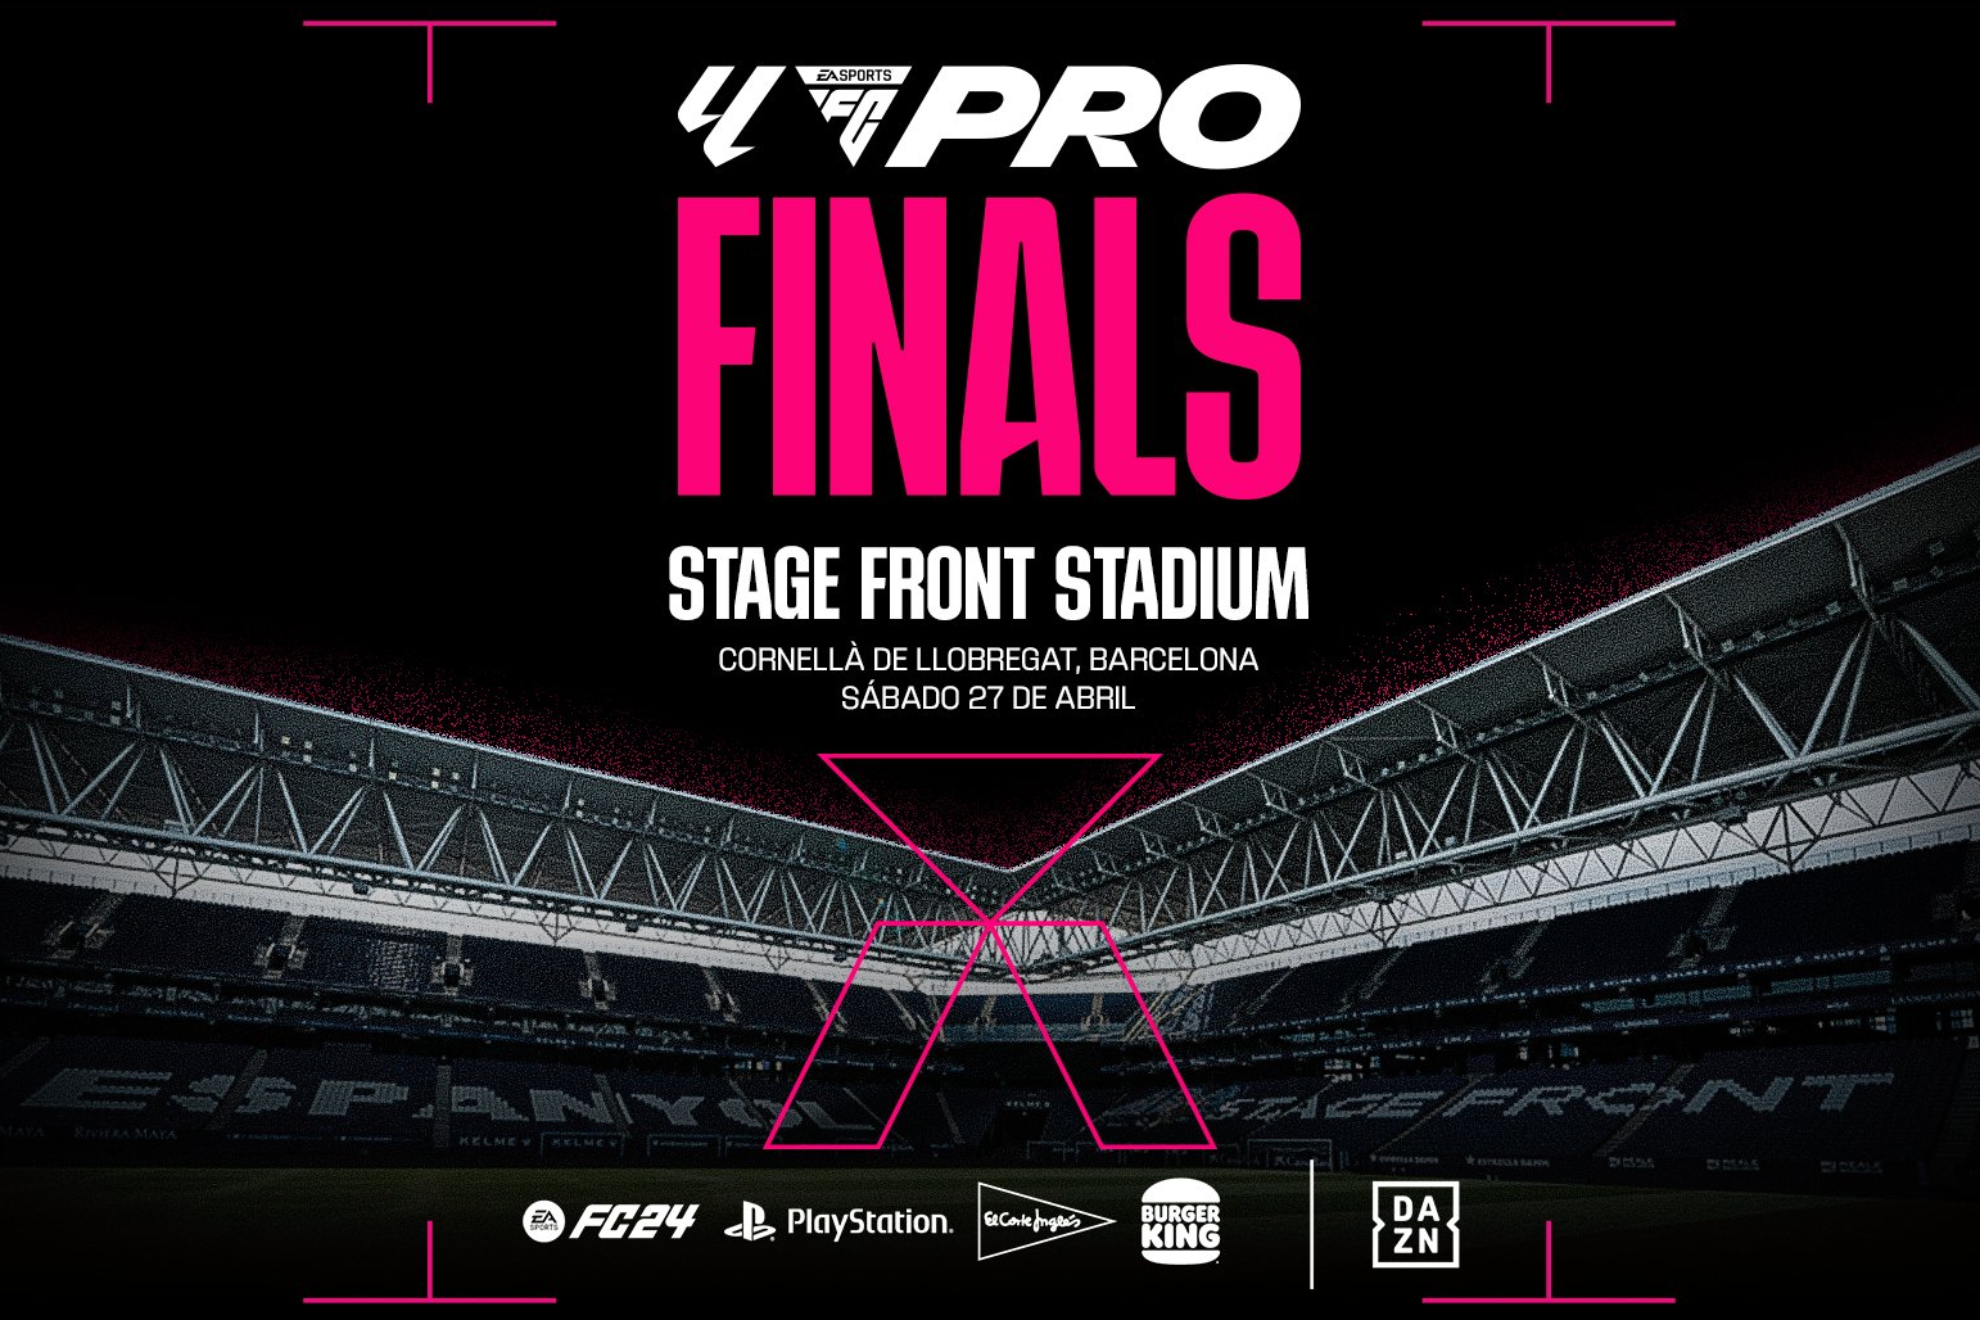 Resumen de LALIGA FC Pro Finals: El Sevilla se alza con el ttulo en el Stage Front Stadium!